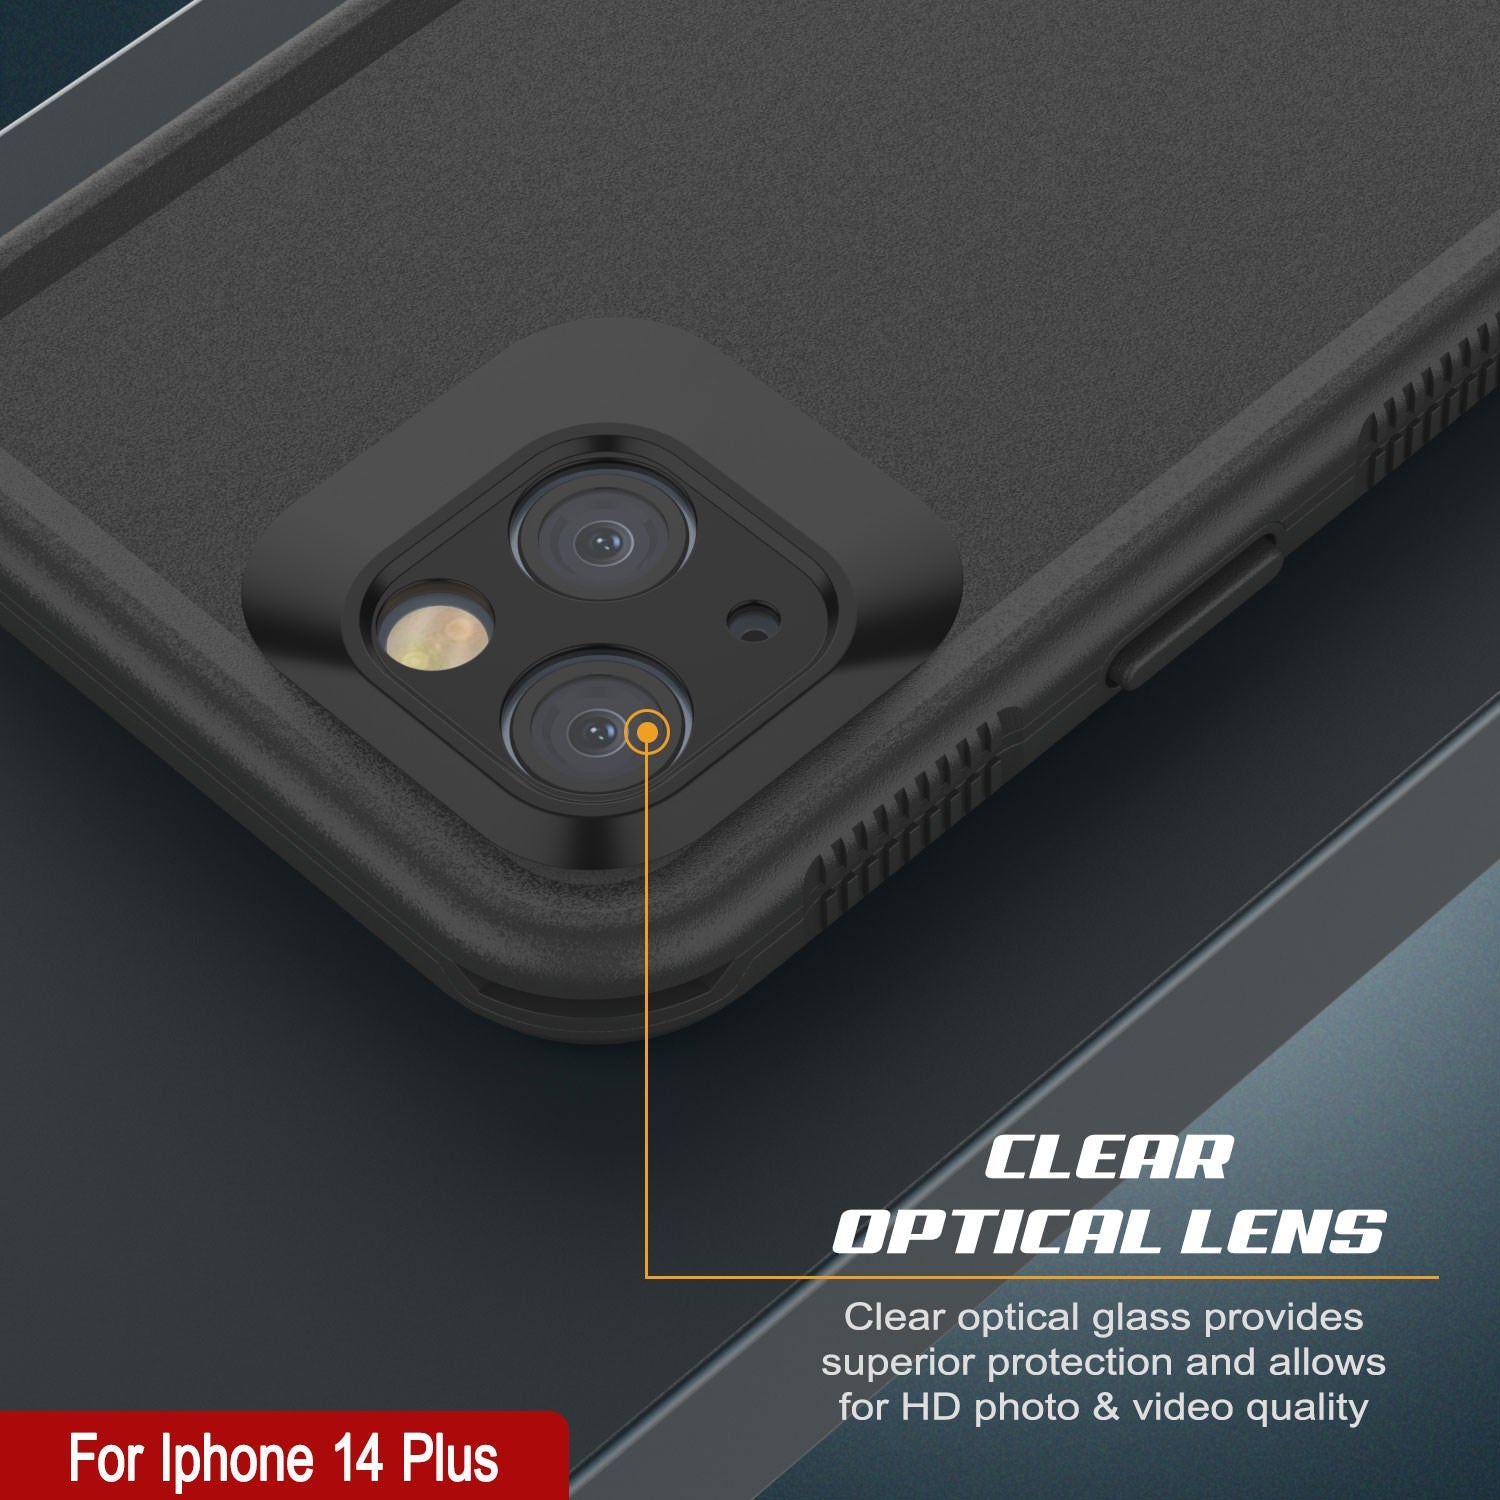 Punkcase iPhone 14 Plus Waterproof Case [Aqua Series] Armor Cover [Black]